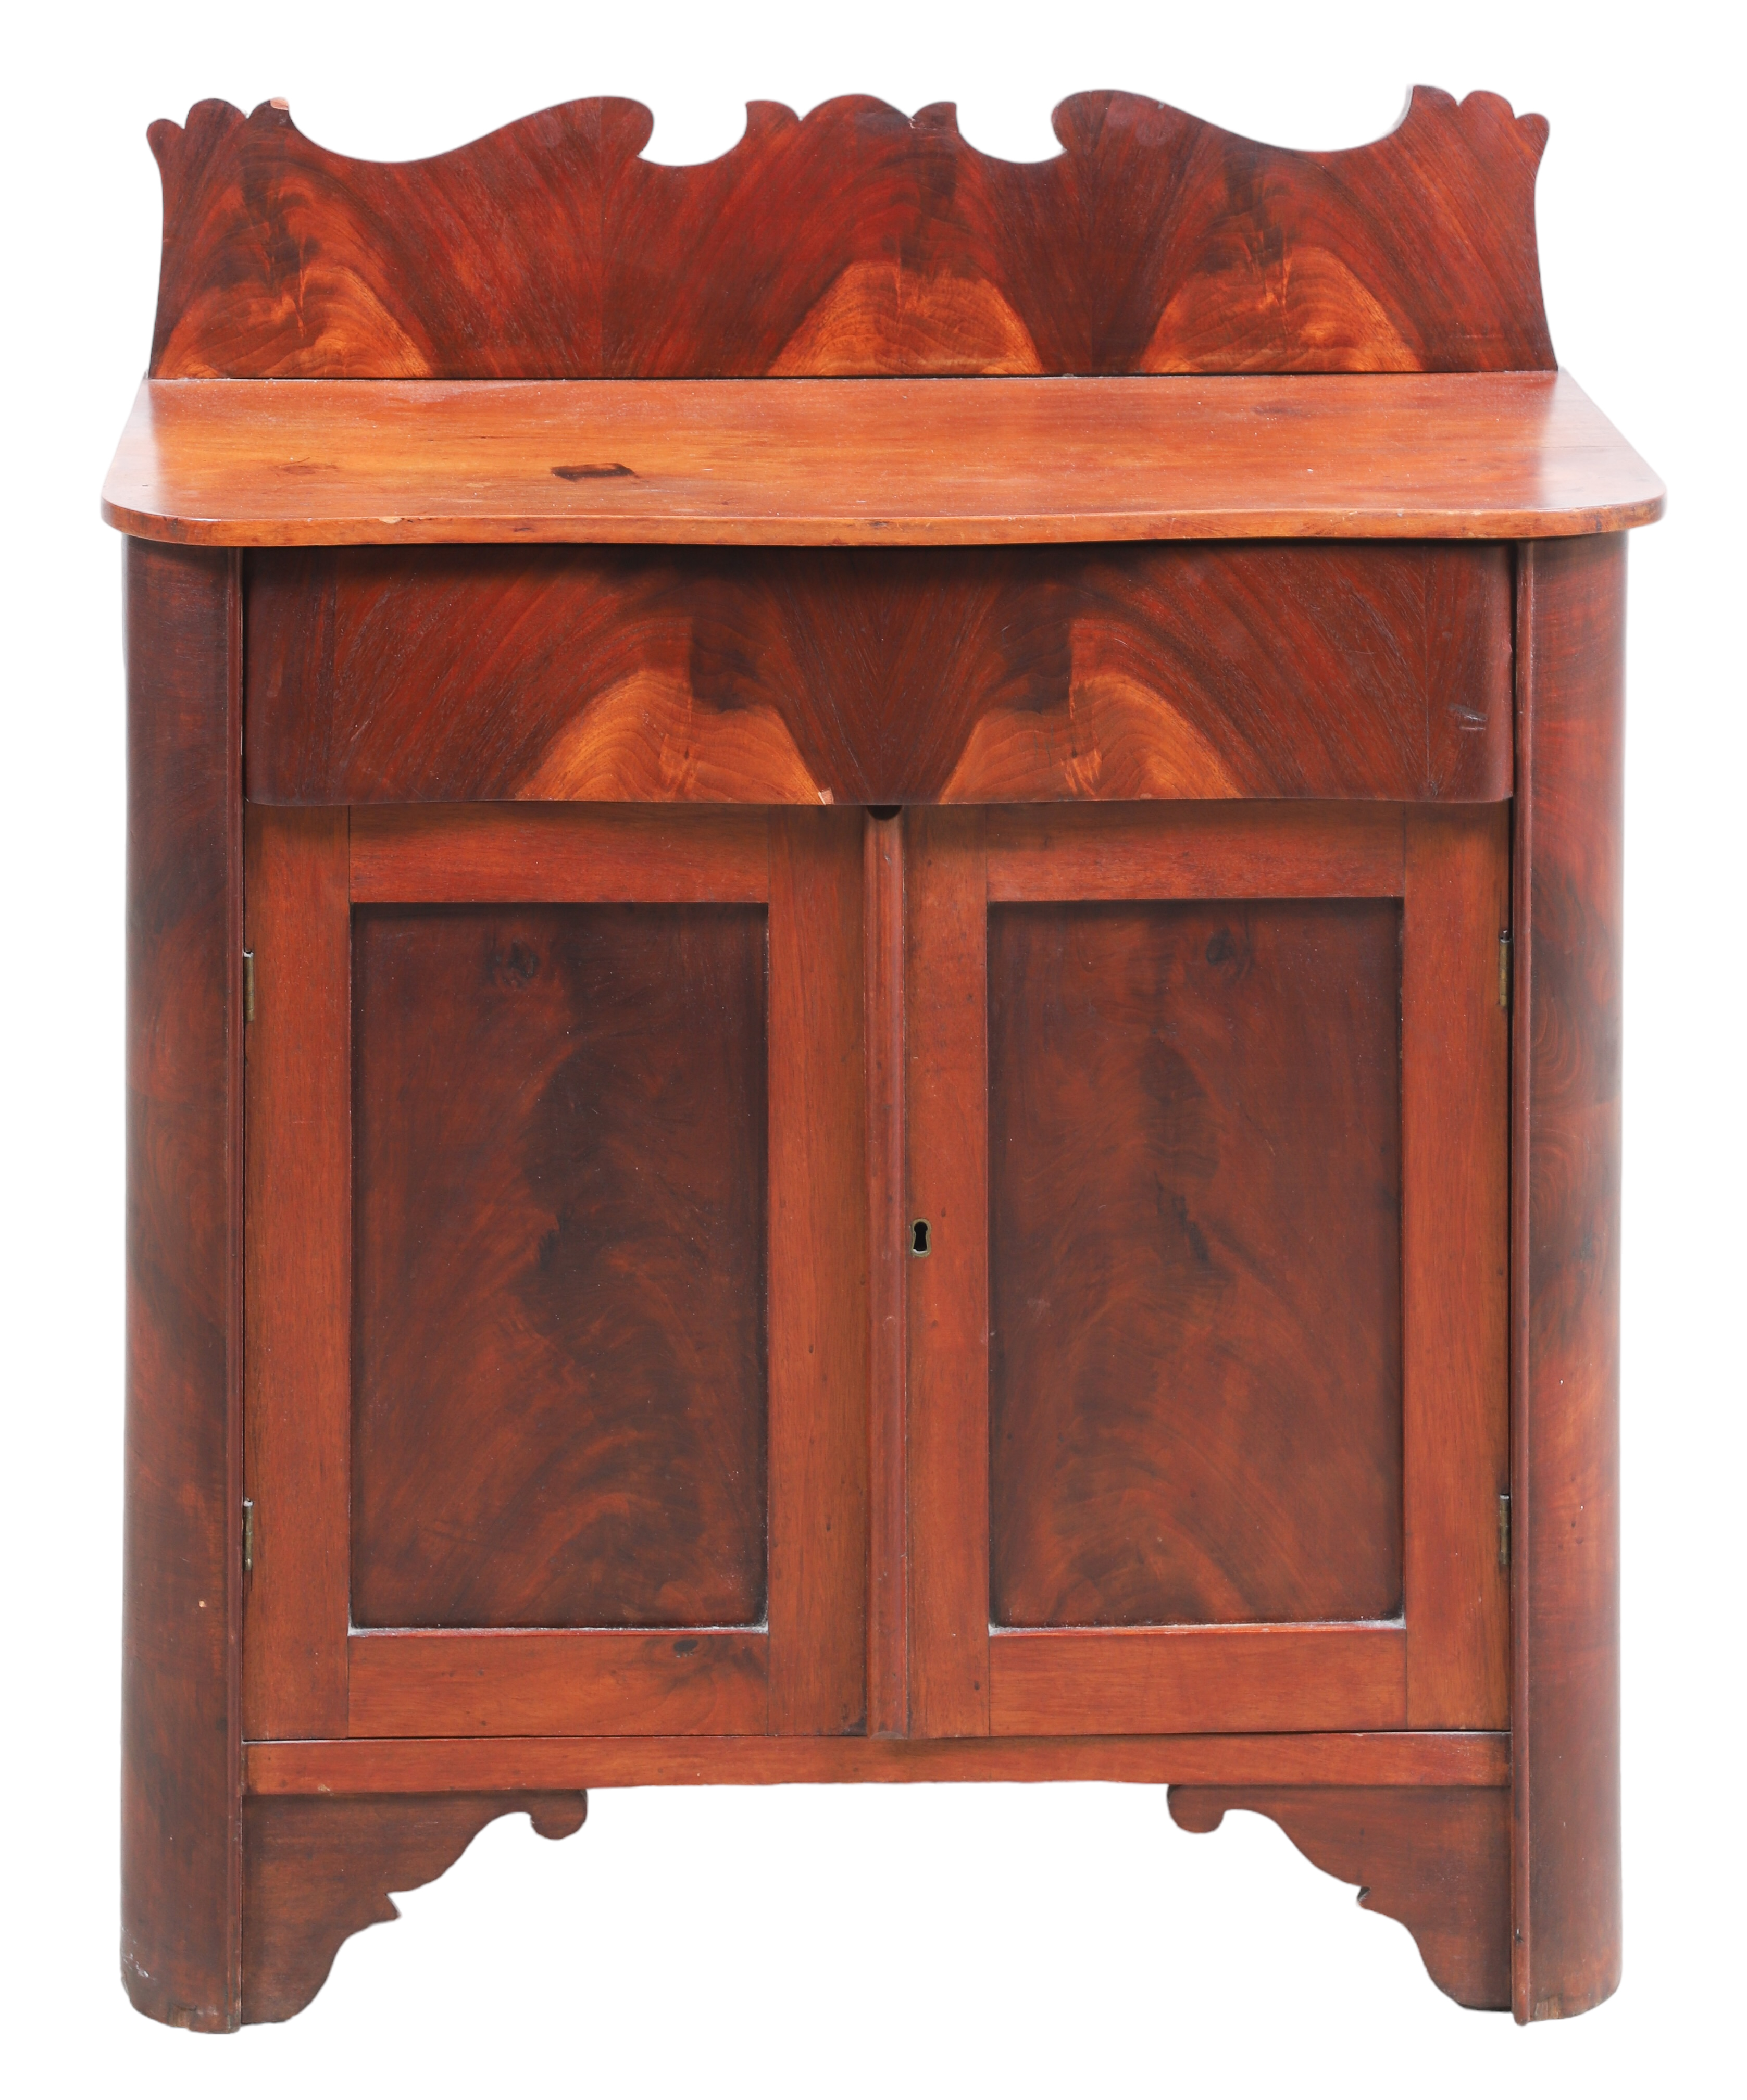 Victorian style mahogany washstand  2e2337